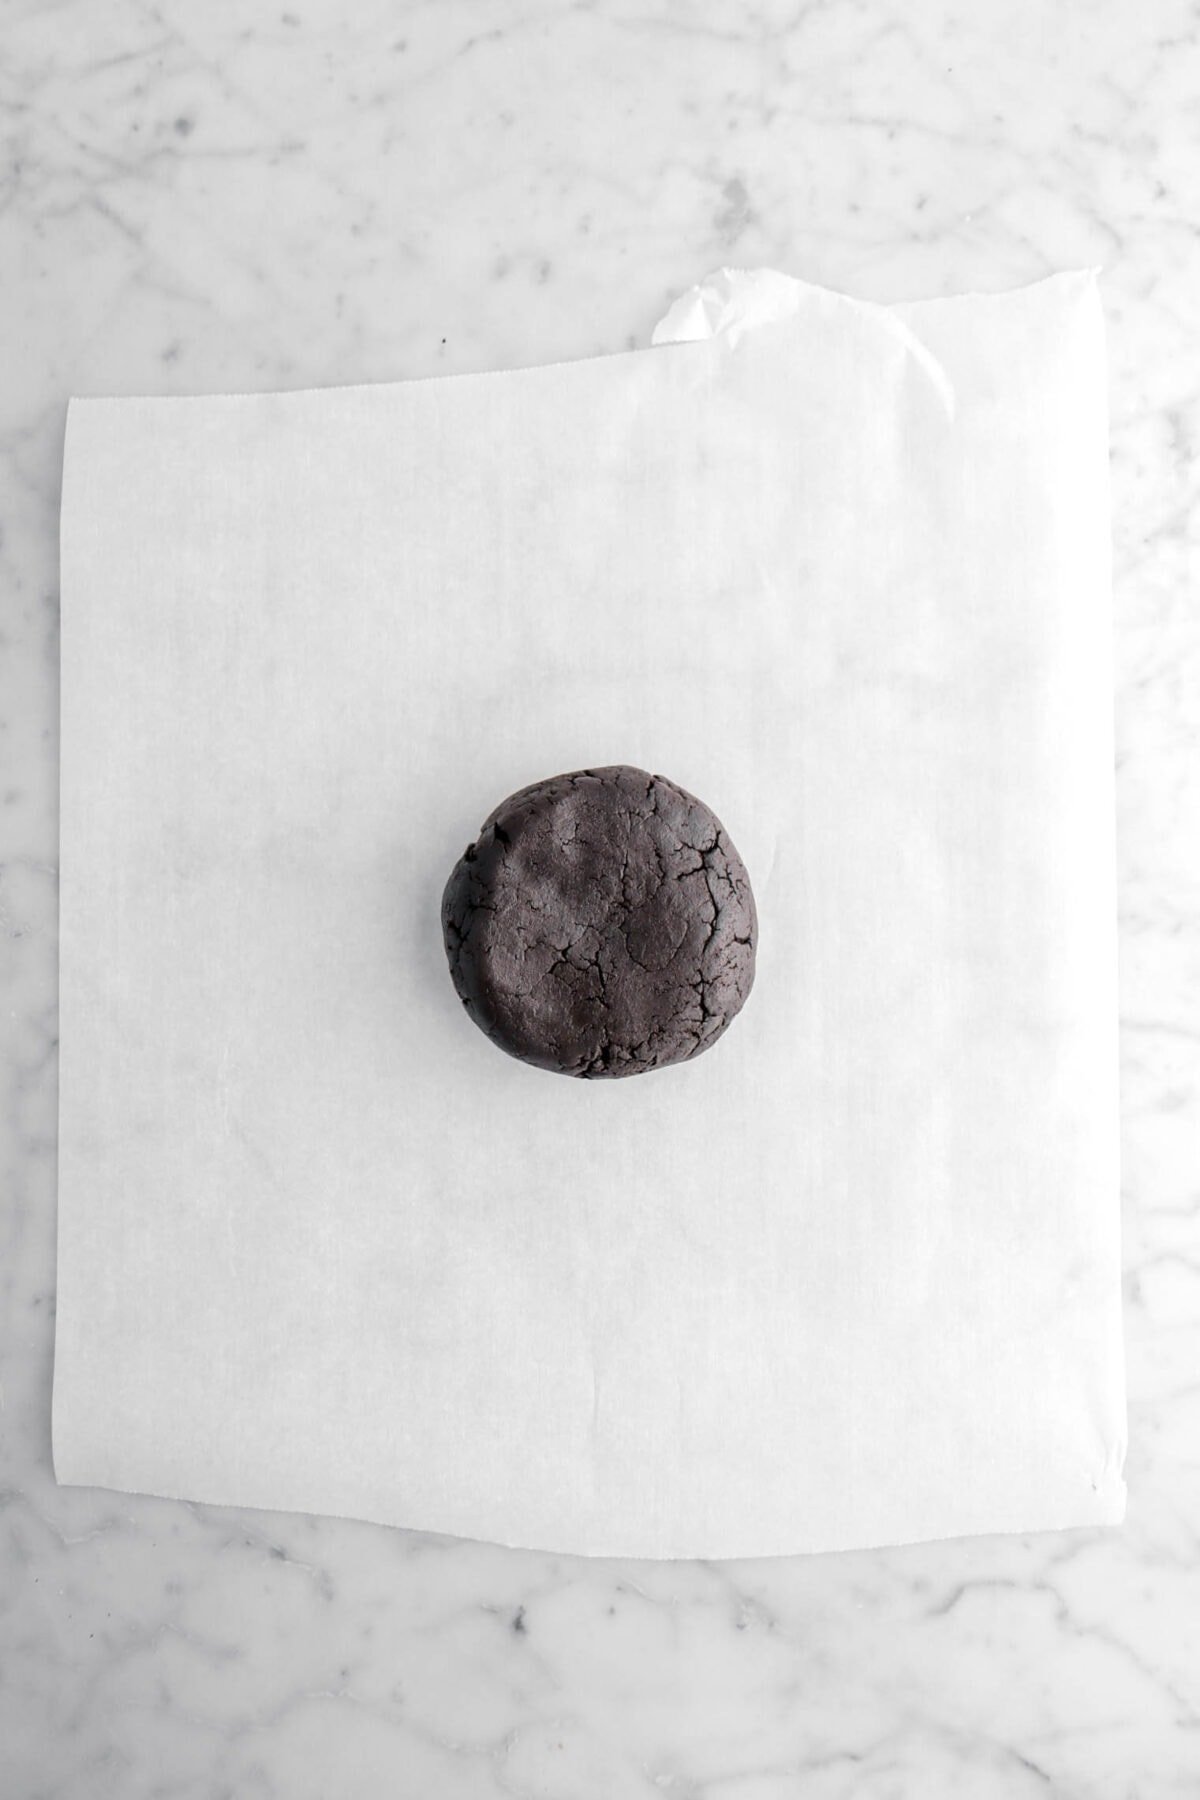 black cookie dough on parchment paper.